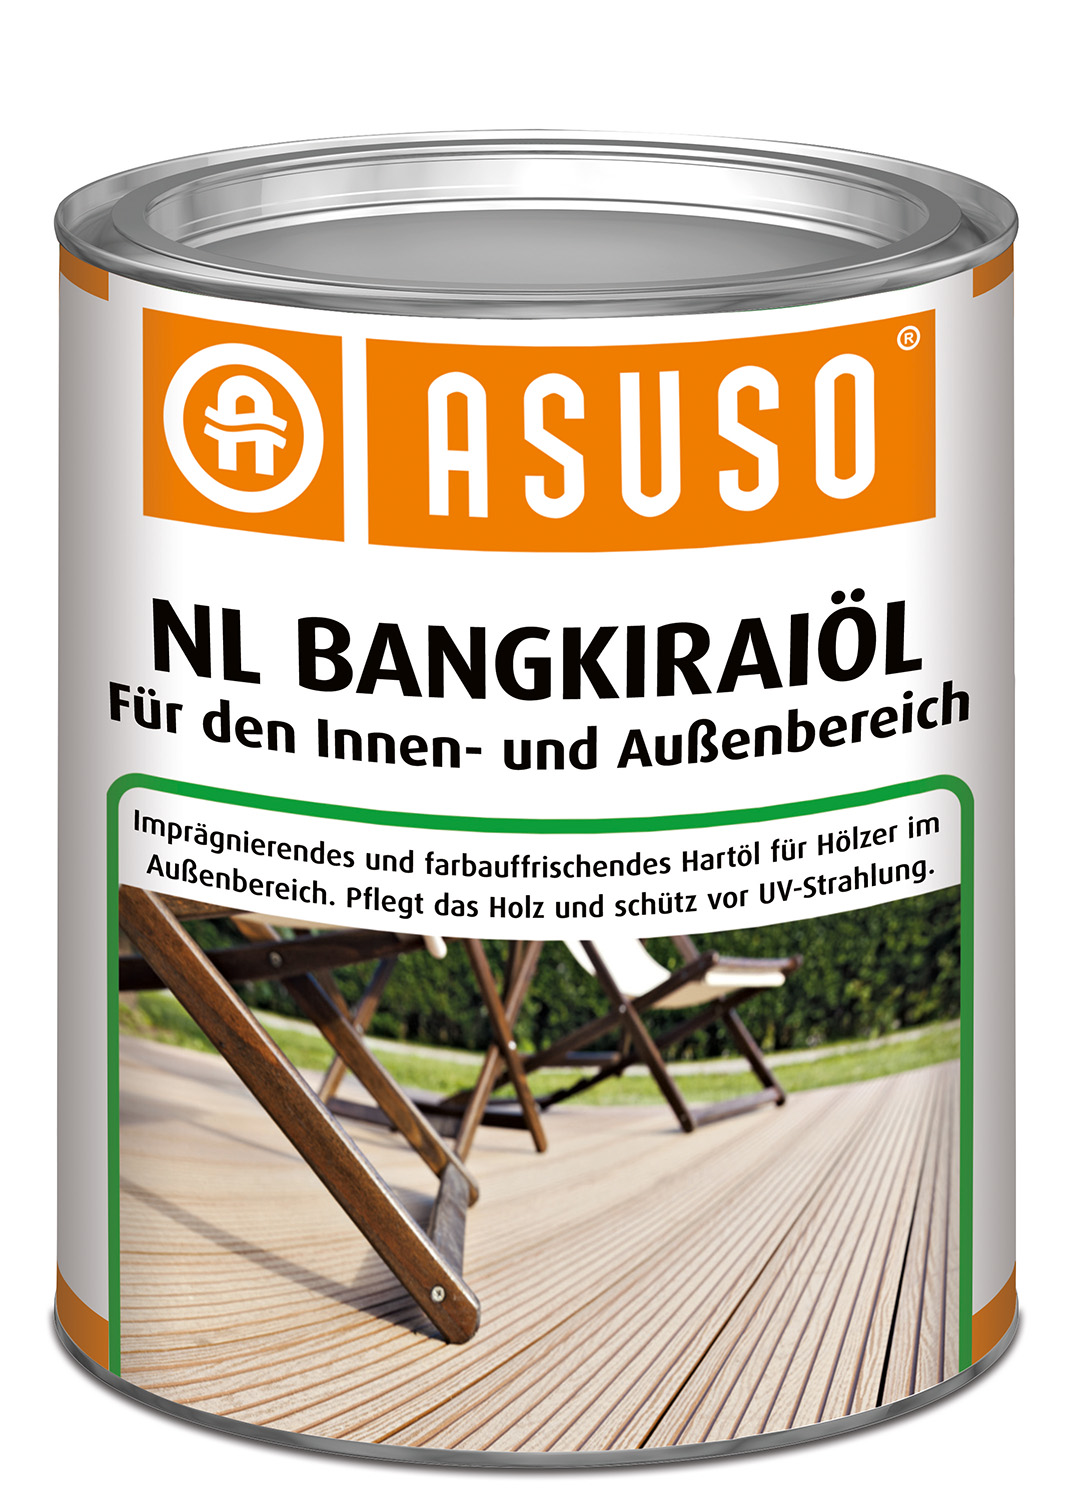 ASUSO NL Bangkiraiöl für Innen und Außen